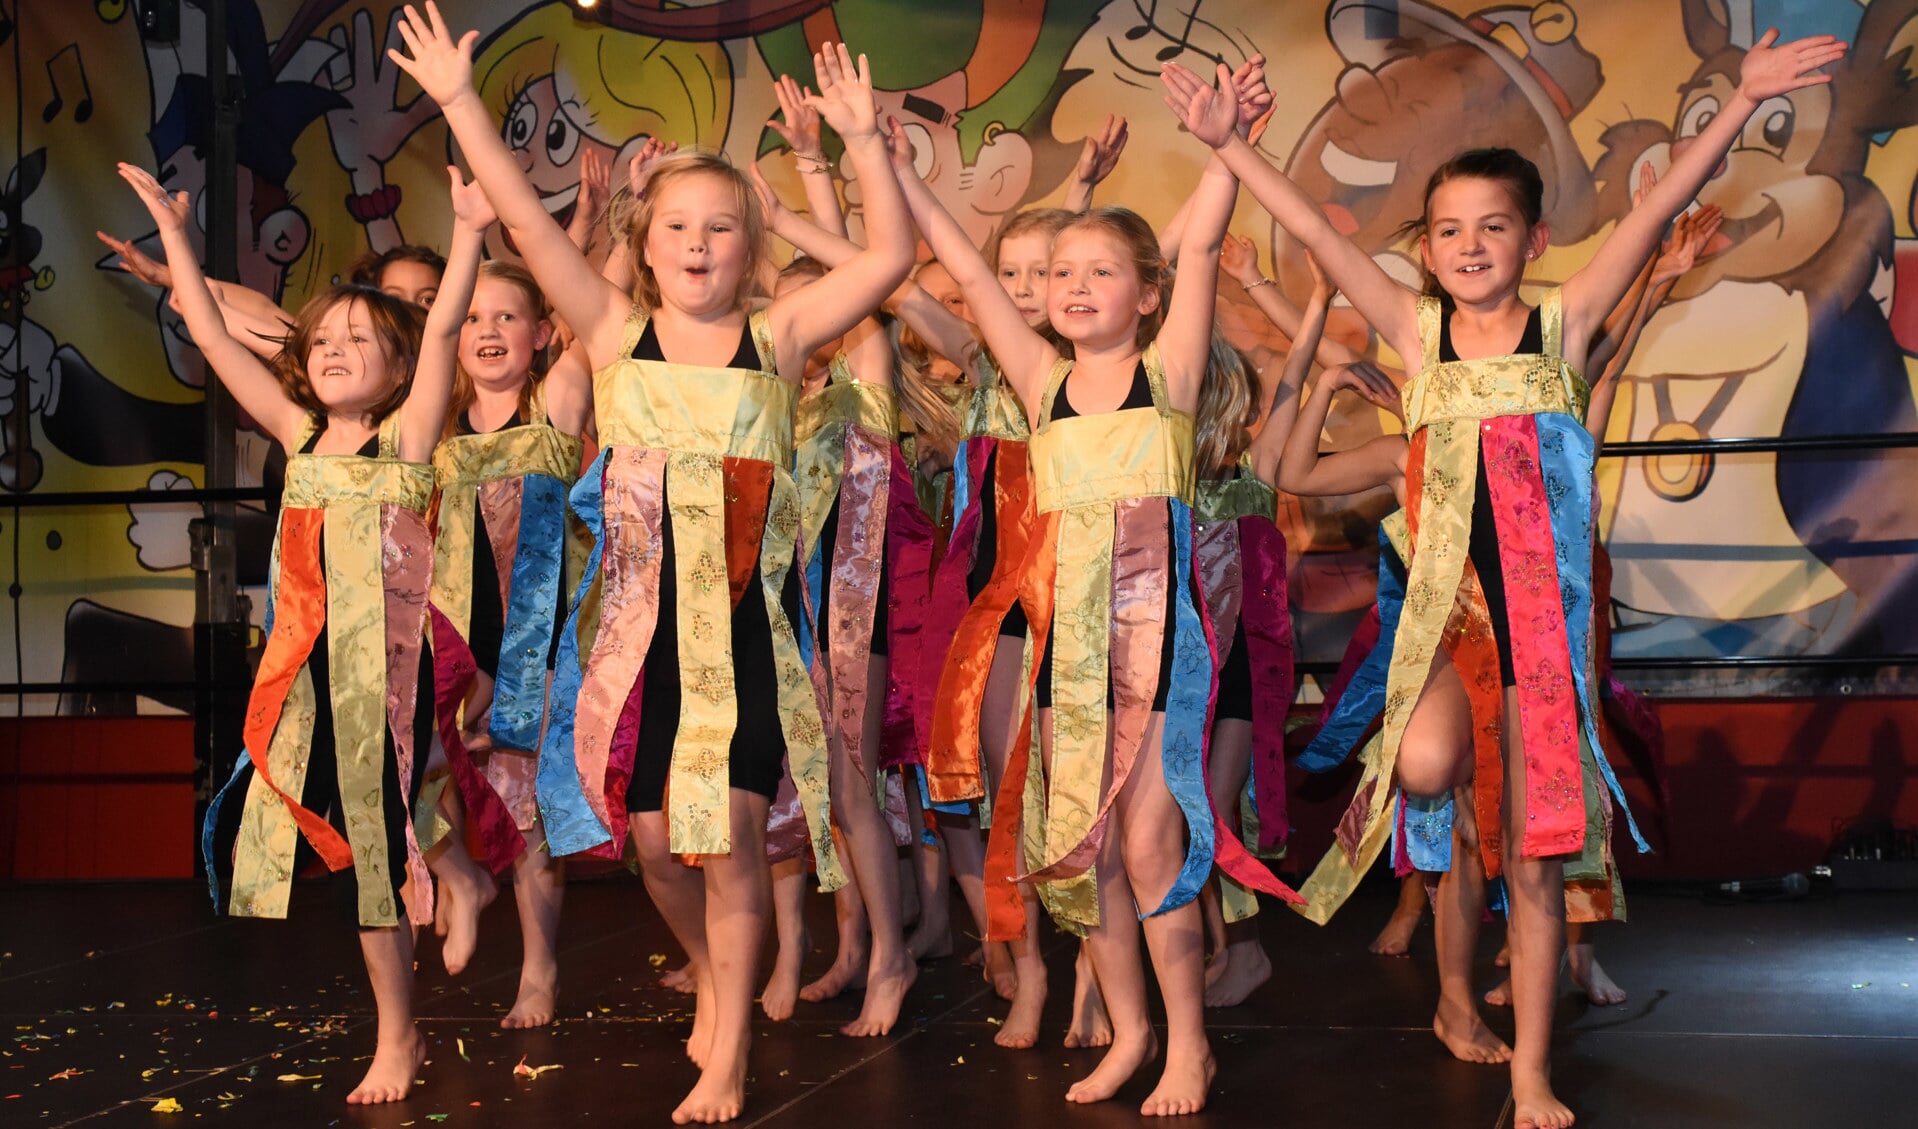 Mooi dansen tijdens de jeugdzitting van D'n Hazekeutel in Venray. Foto: Hoedemaekers Venray.